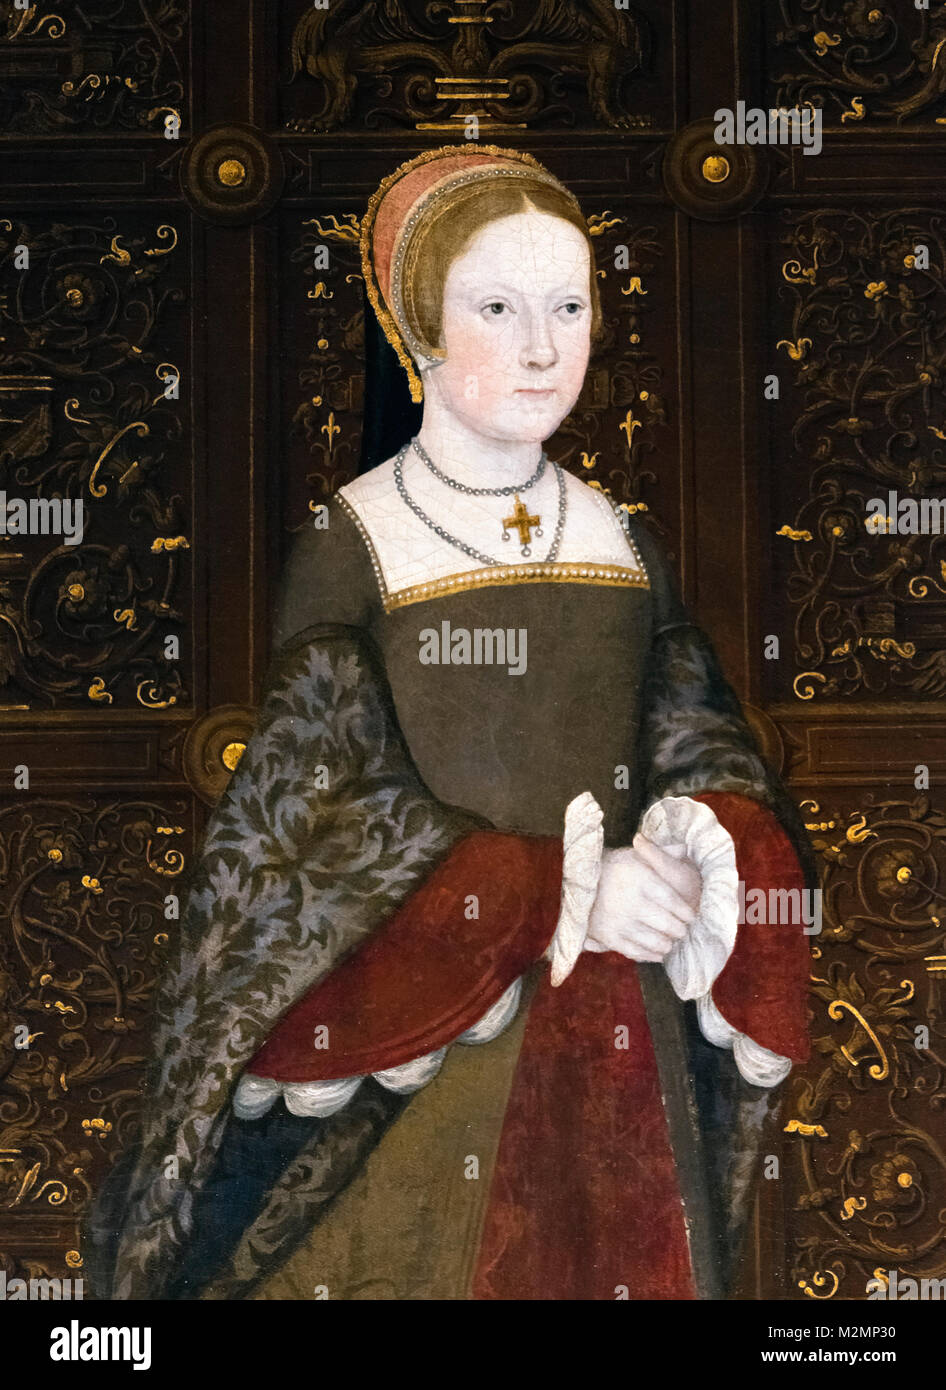 Maria i (1516-1558). Ritratto della futura Regina Tudor Maria i d'Inghilterra come Principessa Maria all'età di 29 anni. Dettaglio di un dipinto intitolato la famiglia di Enrico VIII, olio su pannello, c.1545 Foto Stock